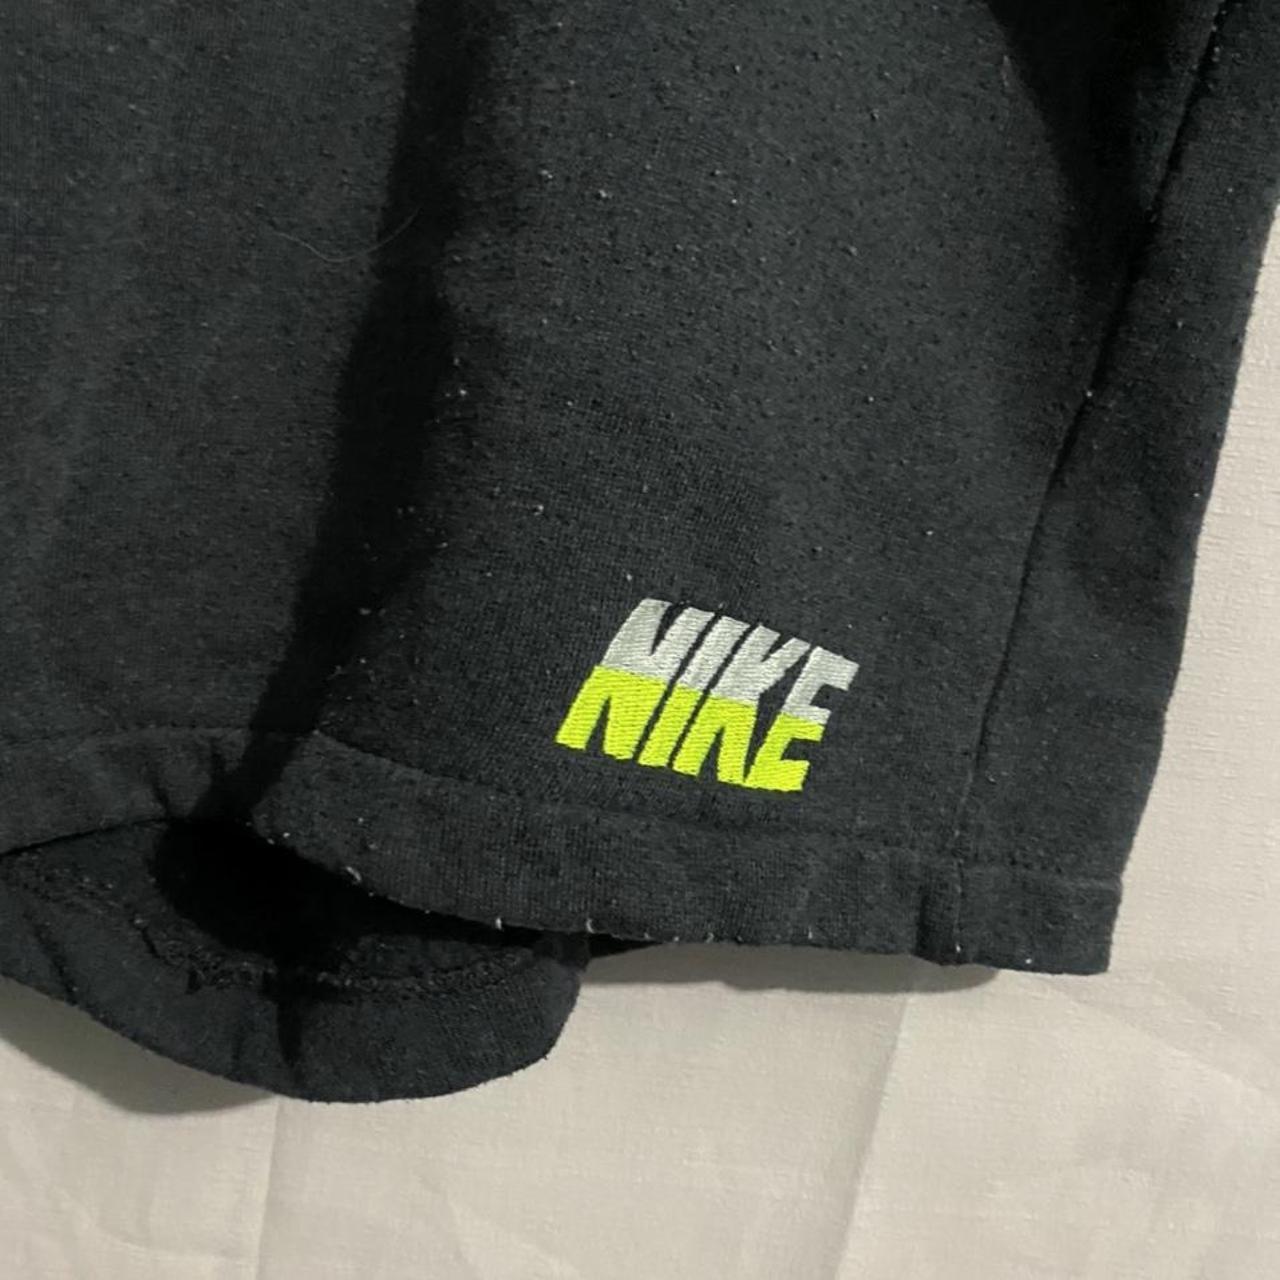 Product Image 2 - 90s Nike Sweat Shorts Size